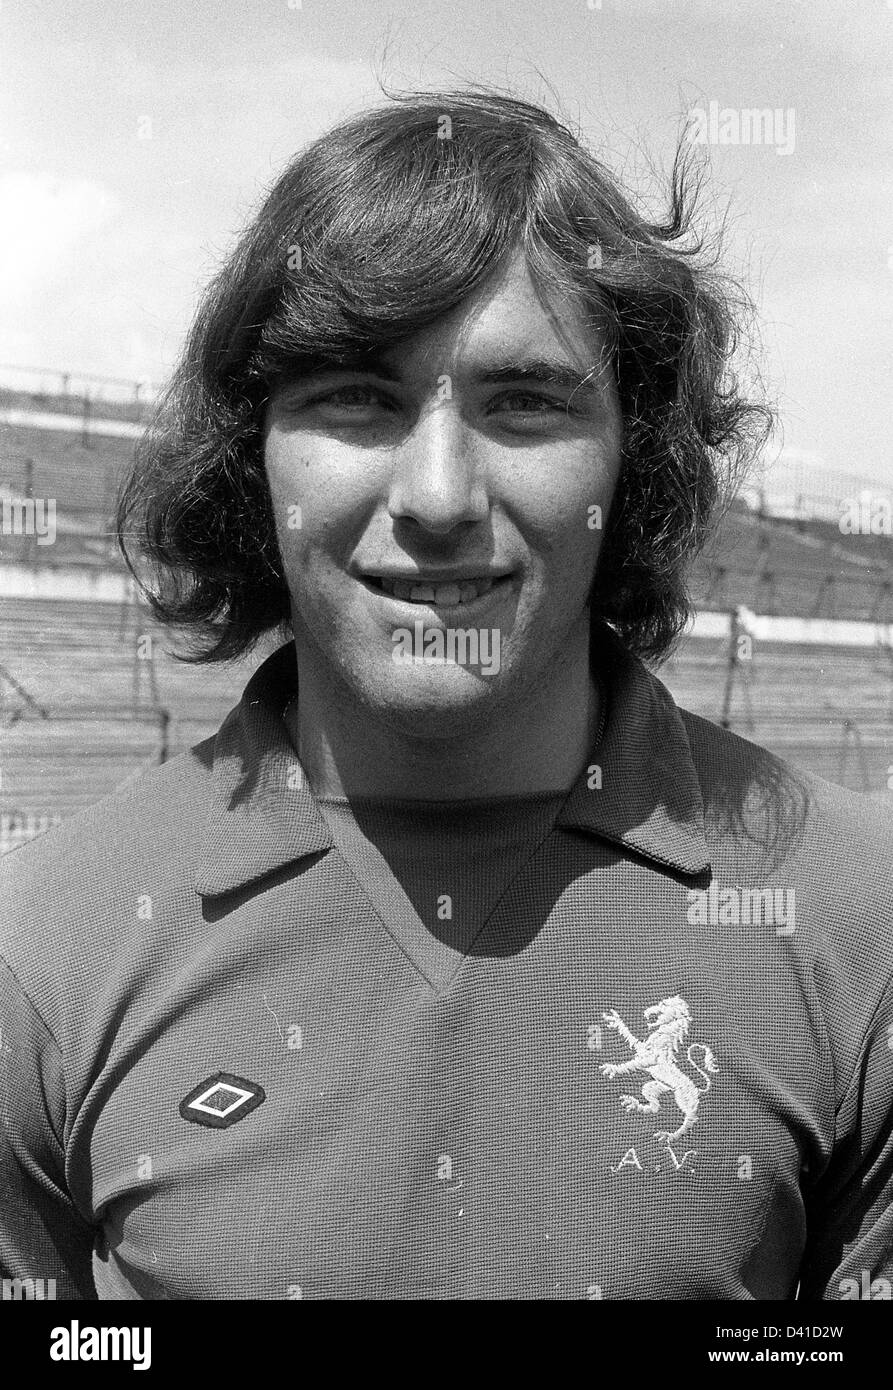 Geoff Crudgington Aston Villa footballer 1971 Stock Photo